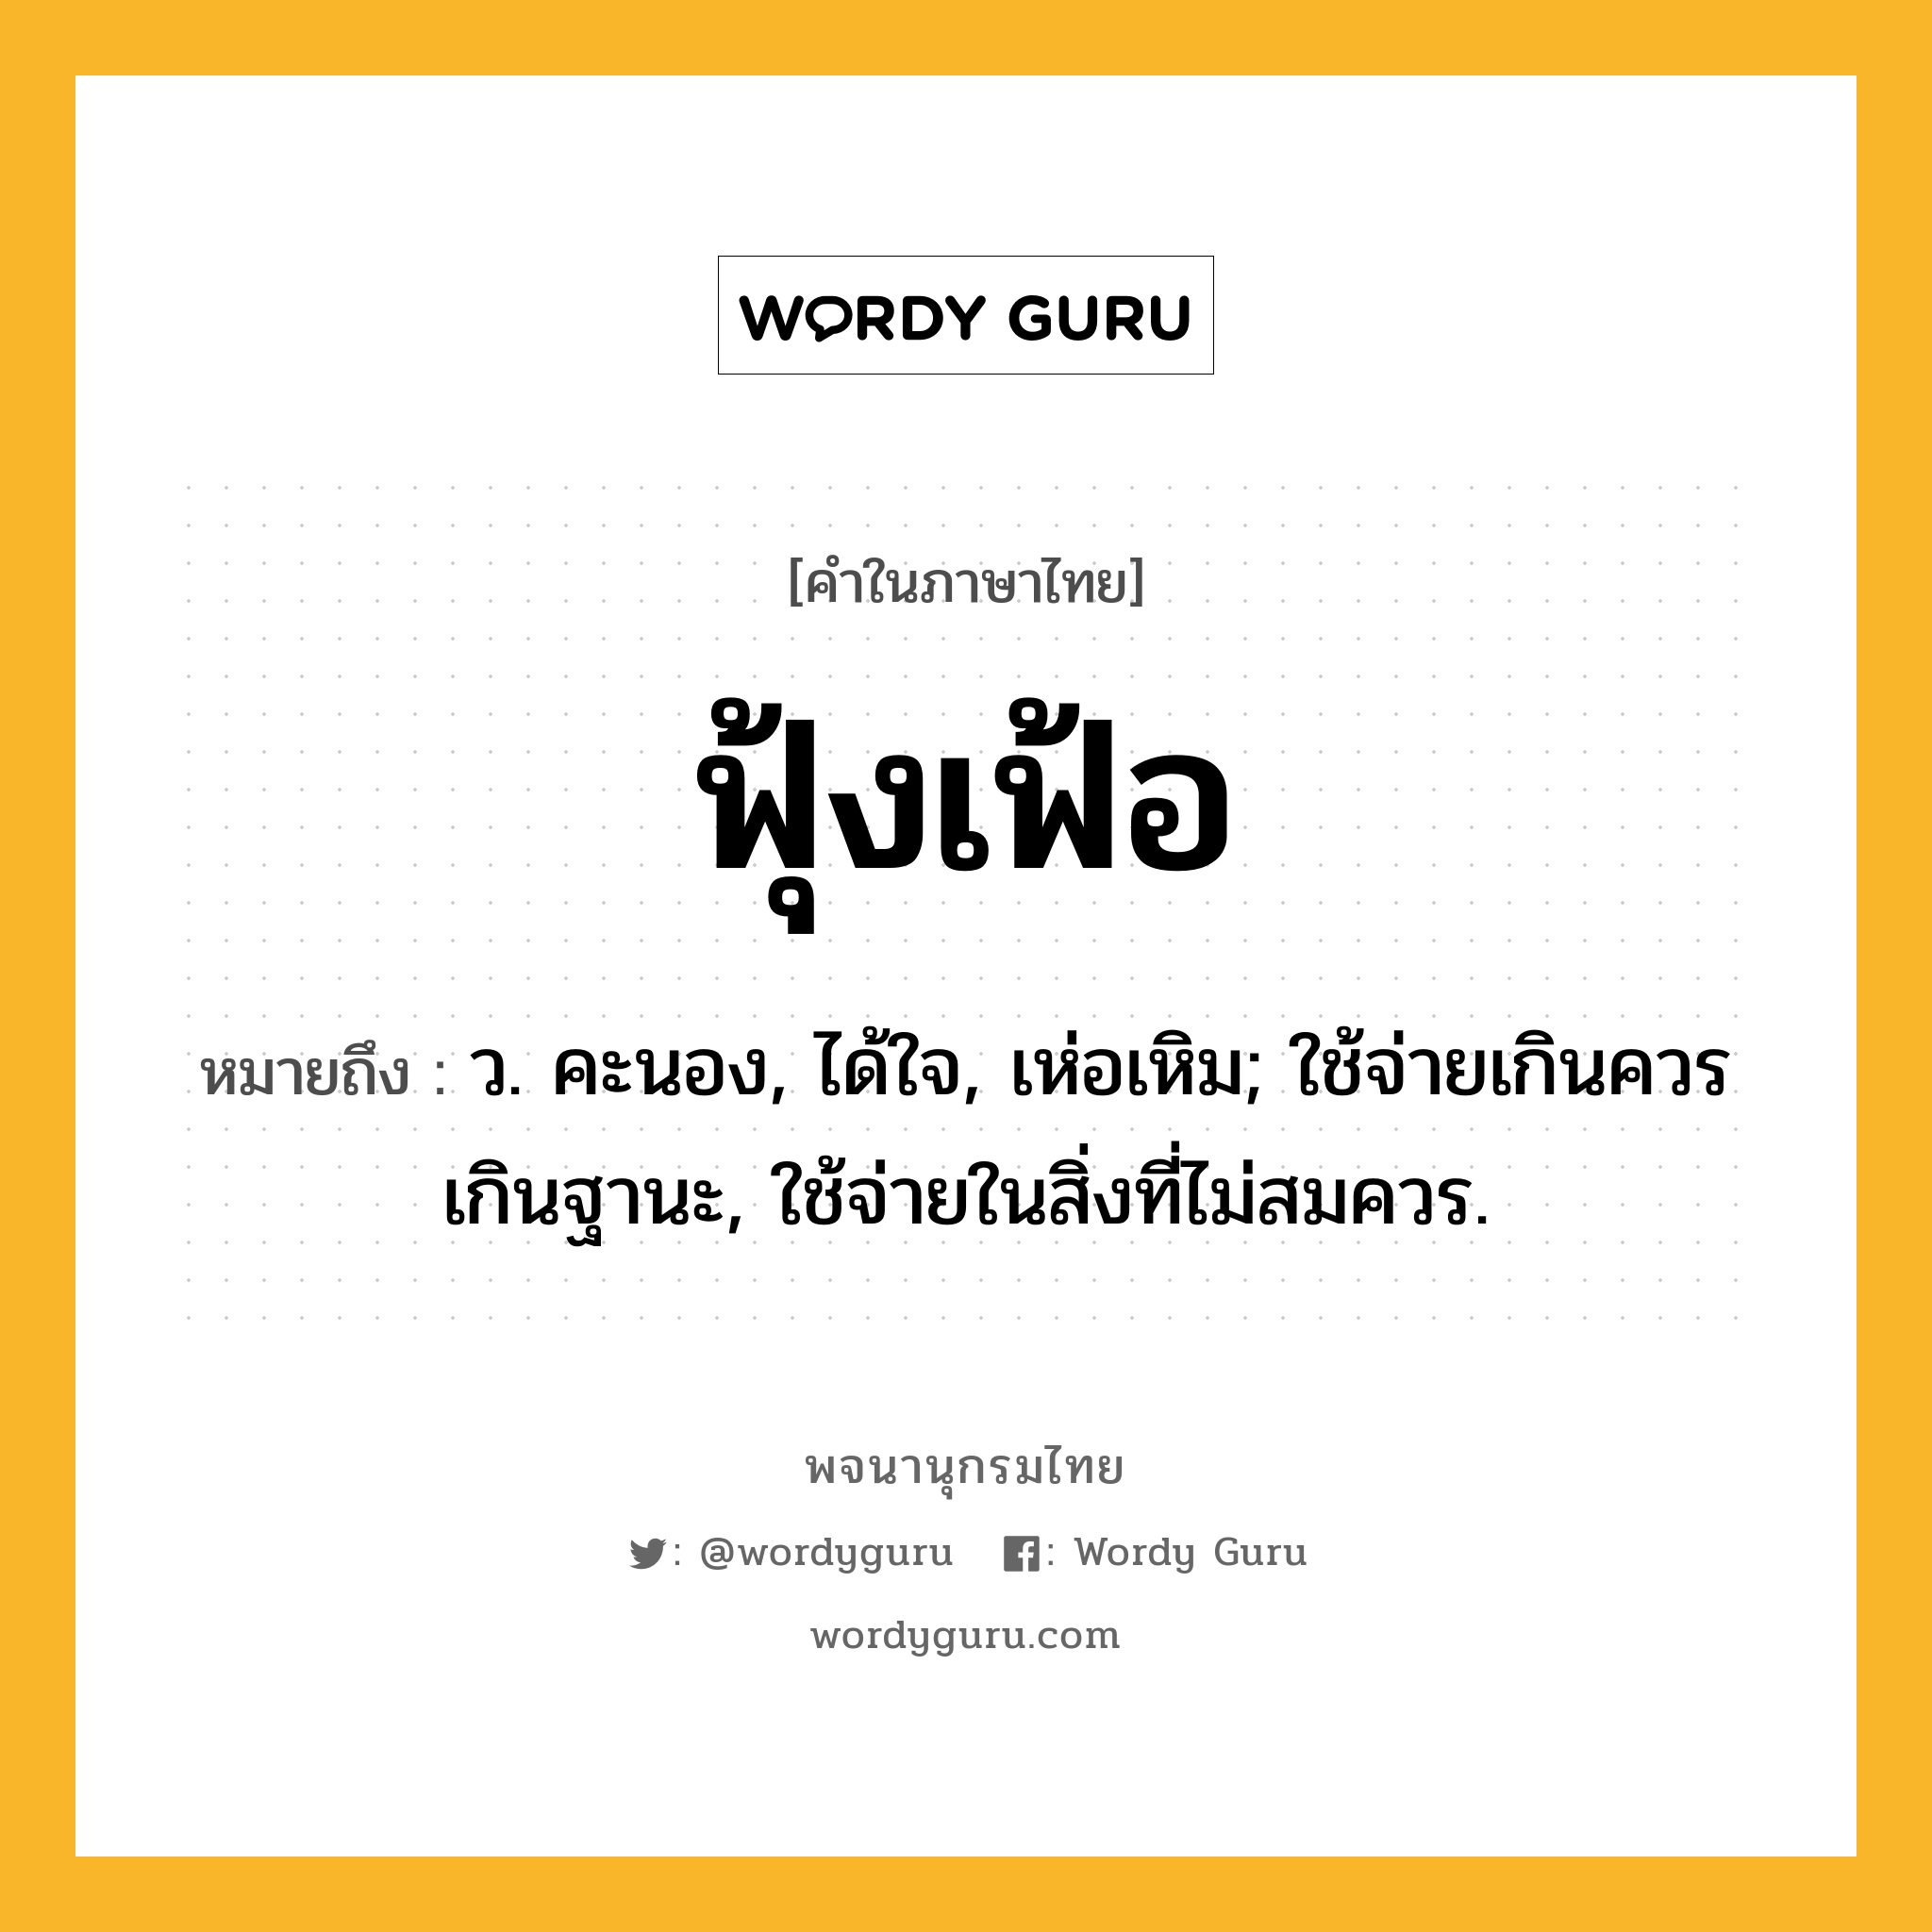 ฟุ้งเฟ้อ หมายถึงอะไร?, คำในภาษาไทย ฟุ้งเฟ้อ หมายถึง ว. คะนอง, ได้ใจ, เห่อเหิม; ใช้จ่ายเกินควรเกินฐานะ, ใช้จ่ายในสิ่งที่ไม่สมควร.